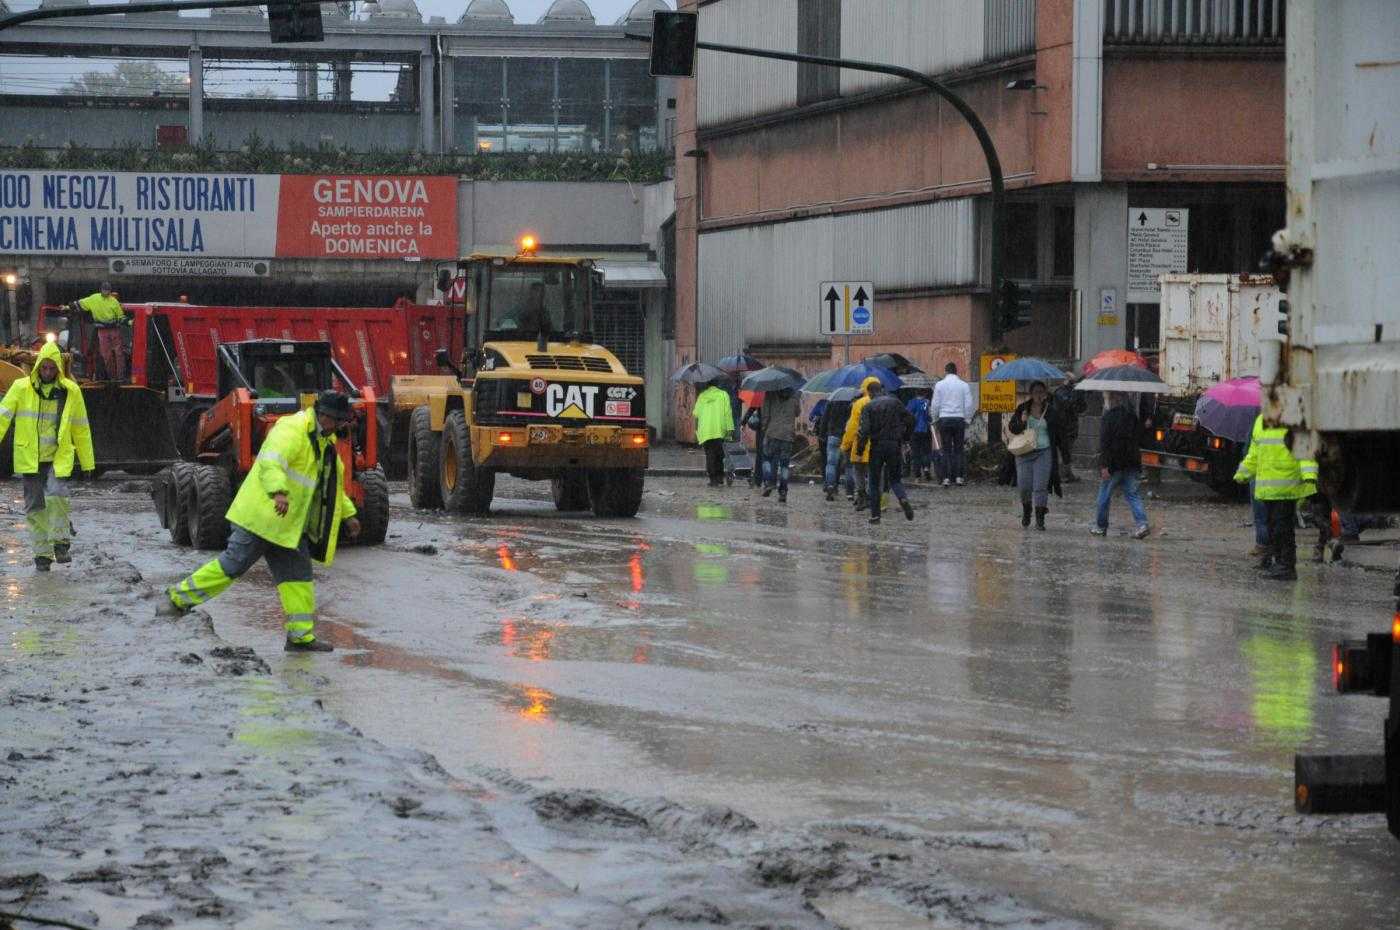 Alluvione Genova, stato di allerta 2 fino a lunedì. Chiuse scuole e cercasi volontari